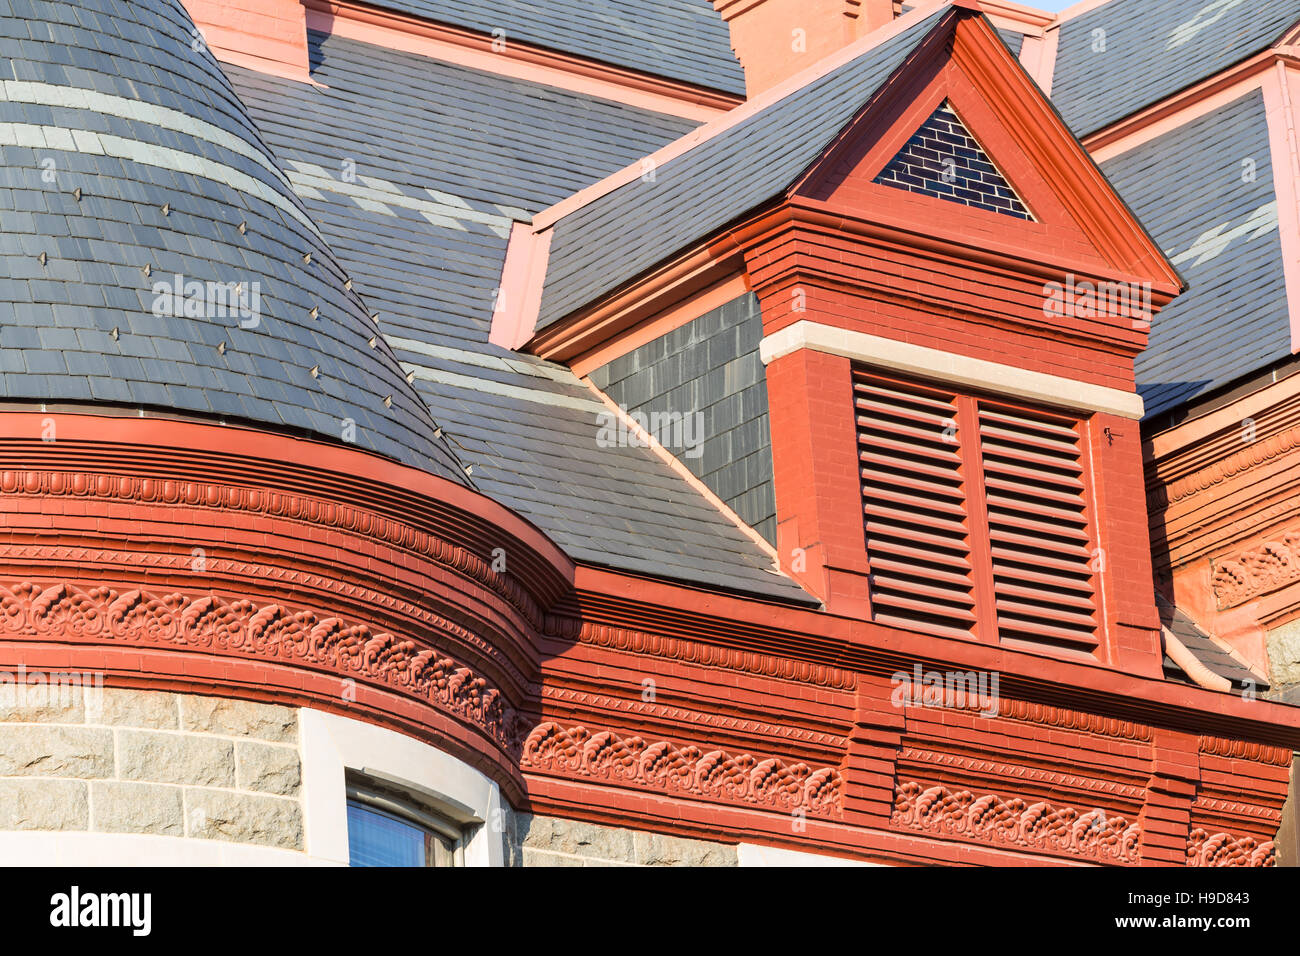 Dettagli architettonici del tetto del Pulaski County Courthouse in Little Rock Arkansas. Foto Stock